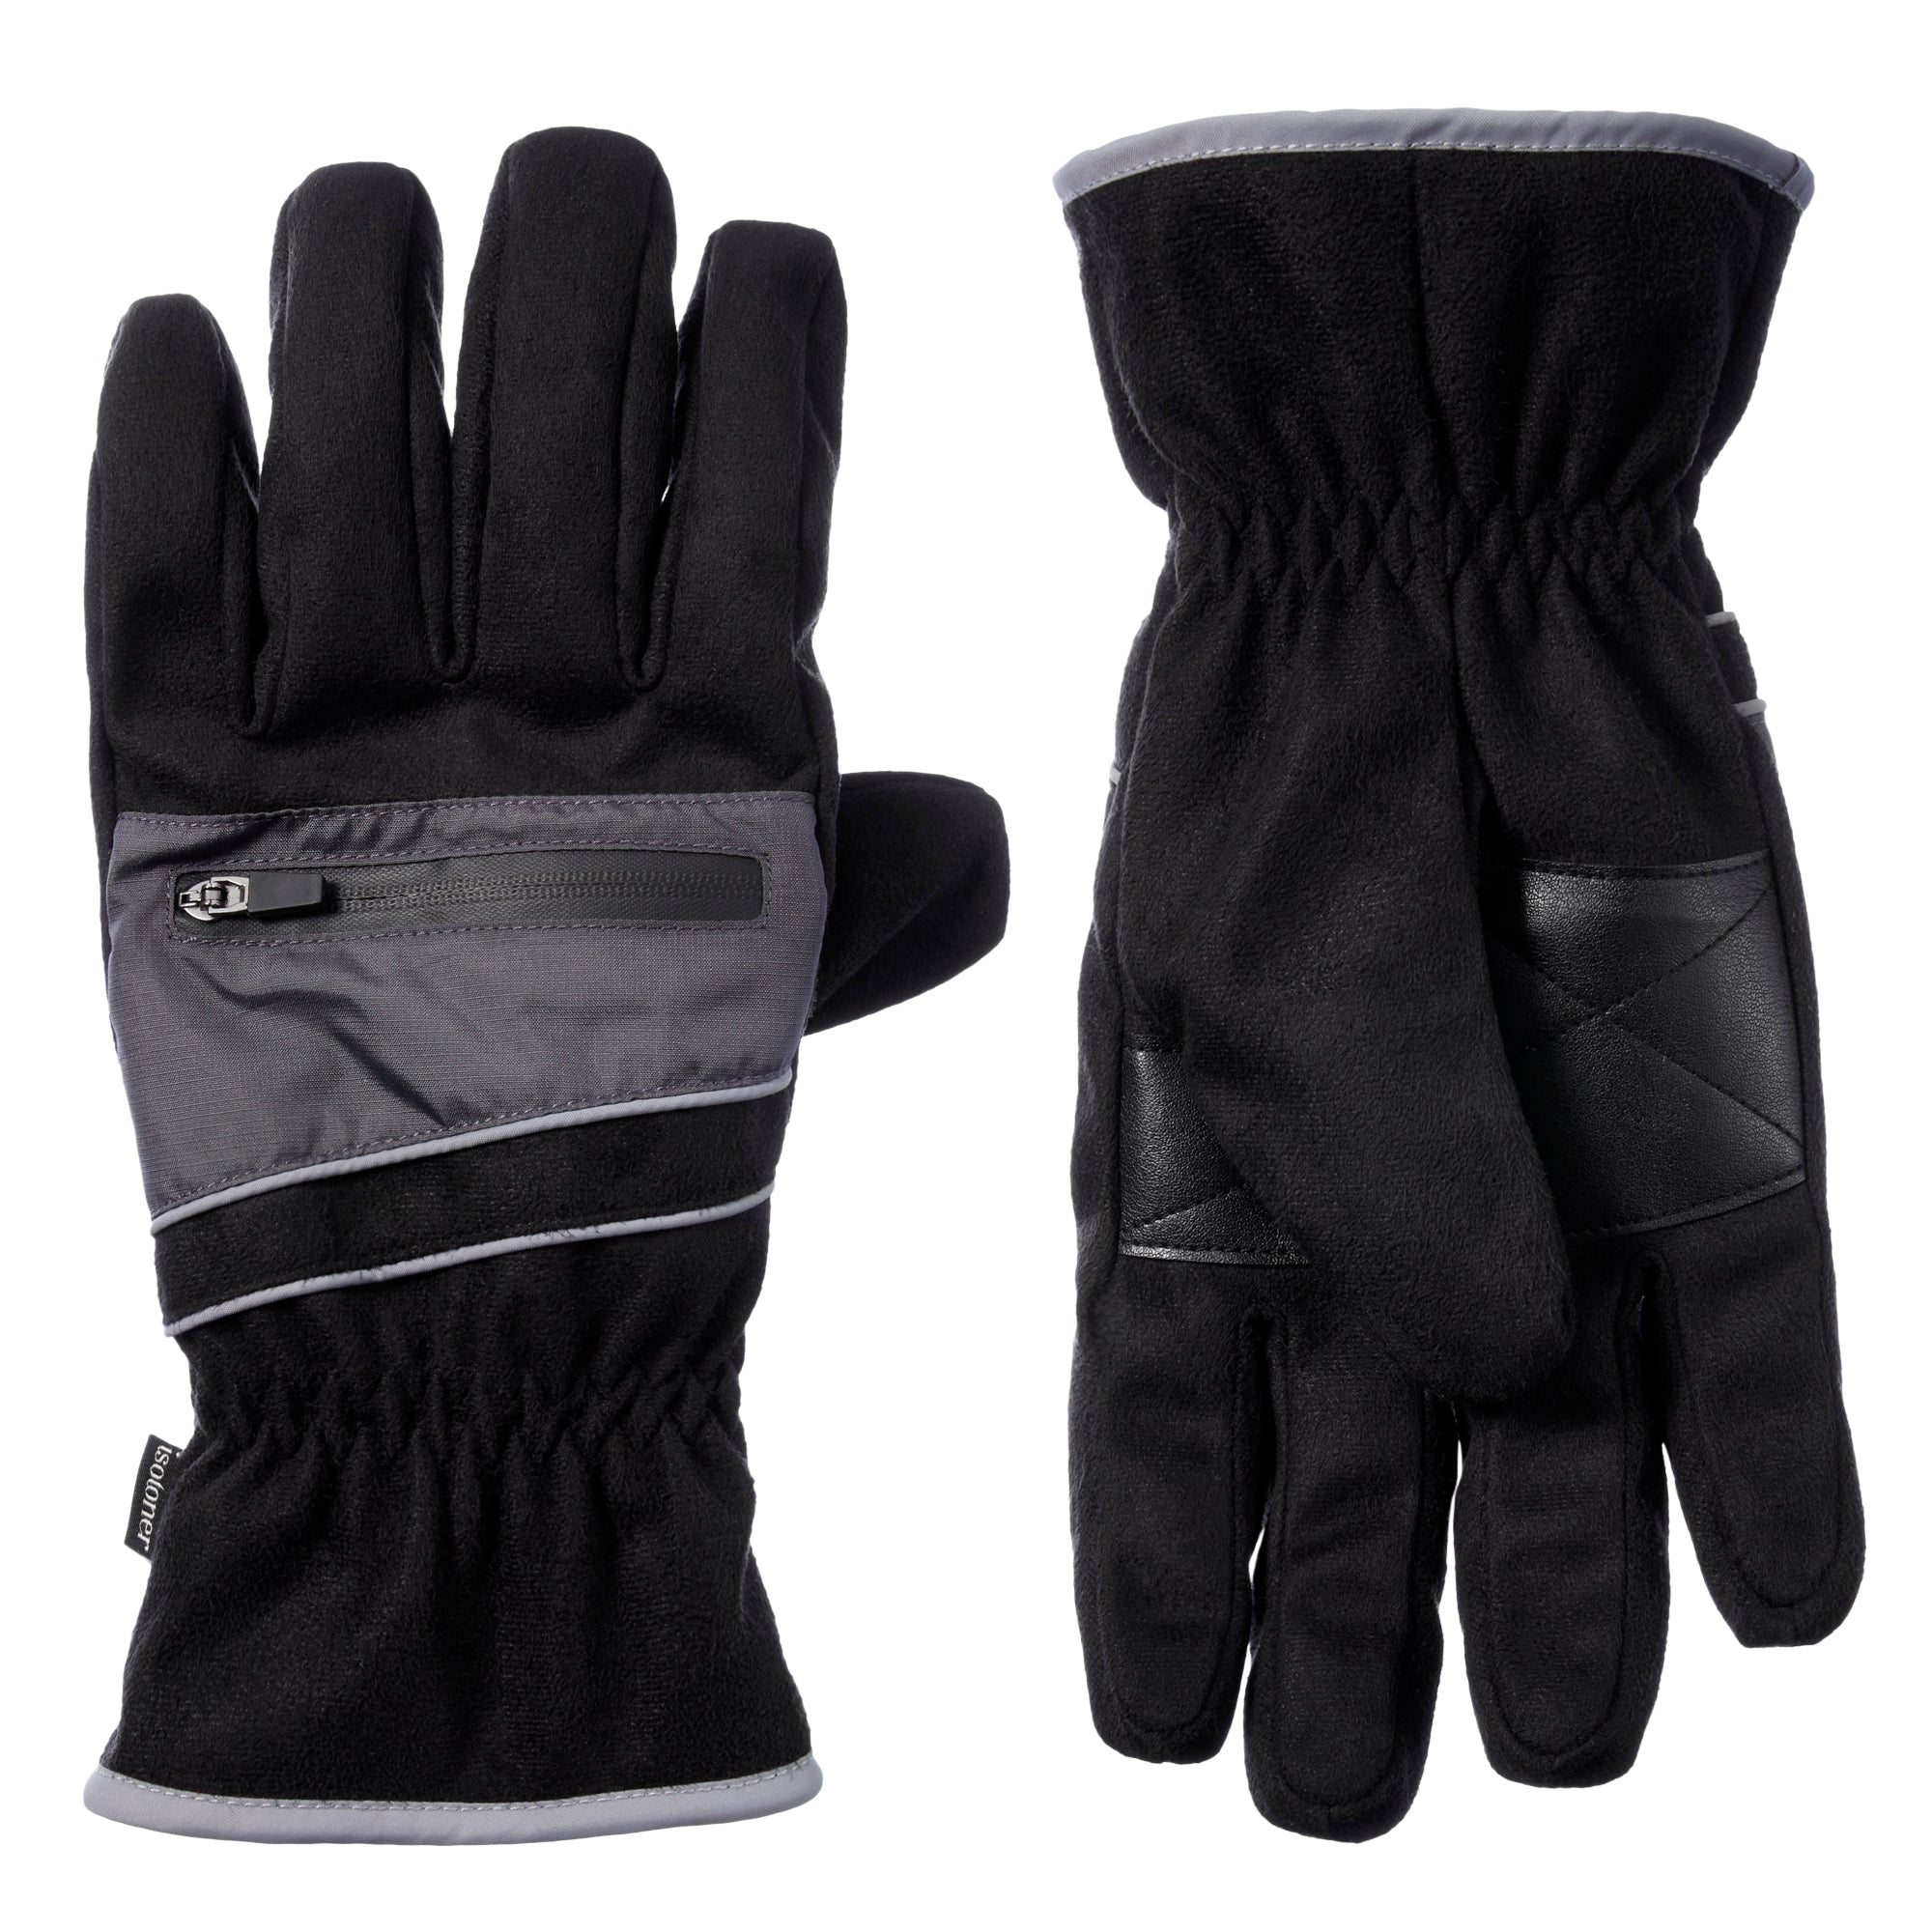 CRIVIT SPORTS Motorcycle Gloves Size M/8